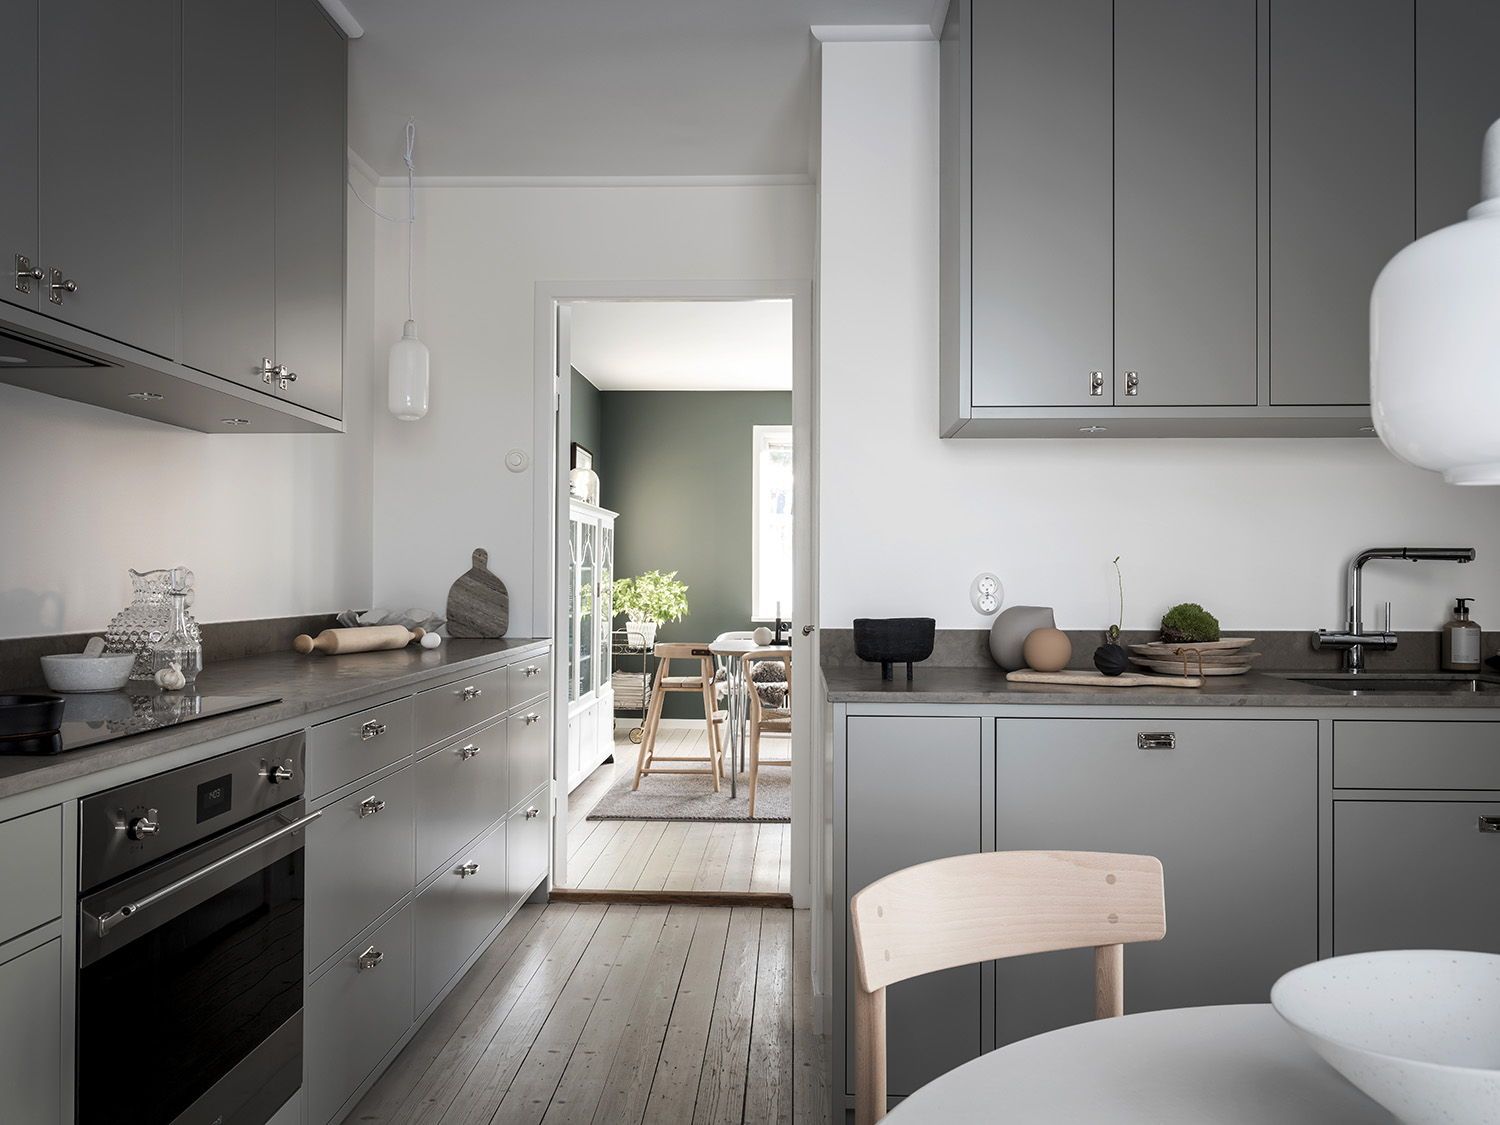 Десять декораторских принципов для кухни в скандинавском стиле: шведский минимализм - обзор